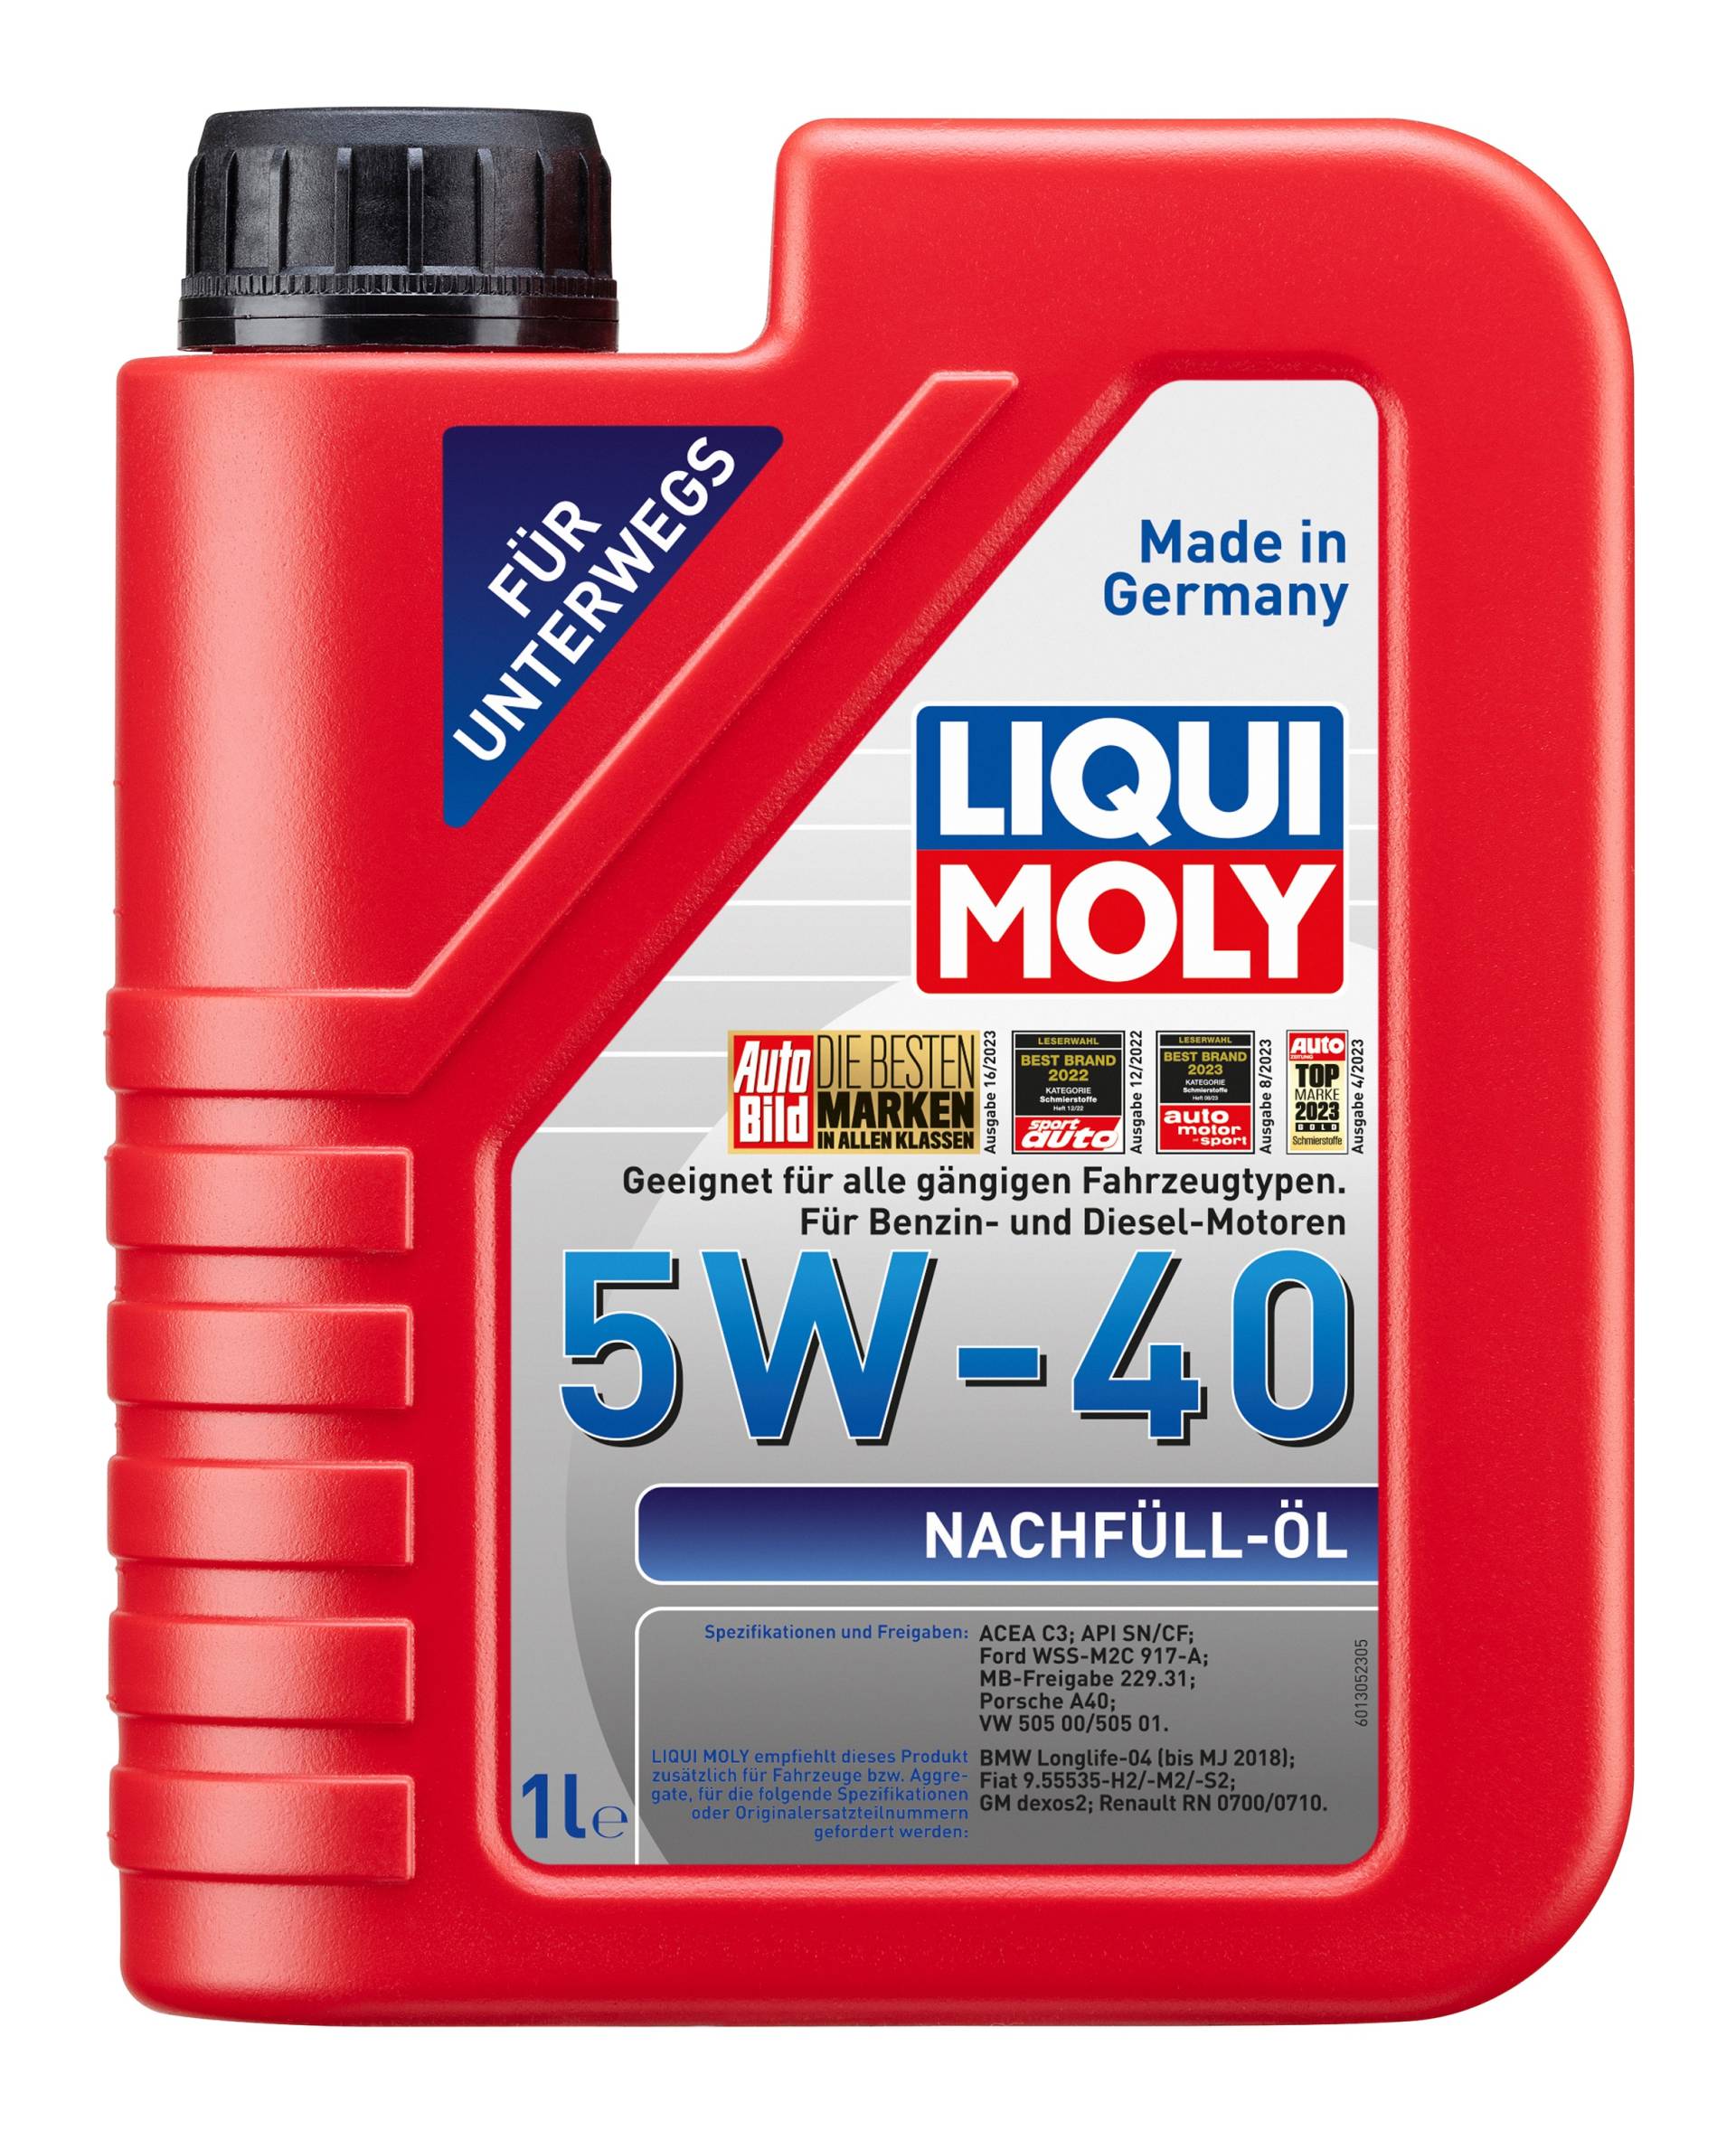 Liqui Moly Nachfüll-Öl SAE 5W-40 Motoröl, 1 Liter von Liqui Moly